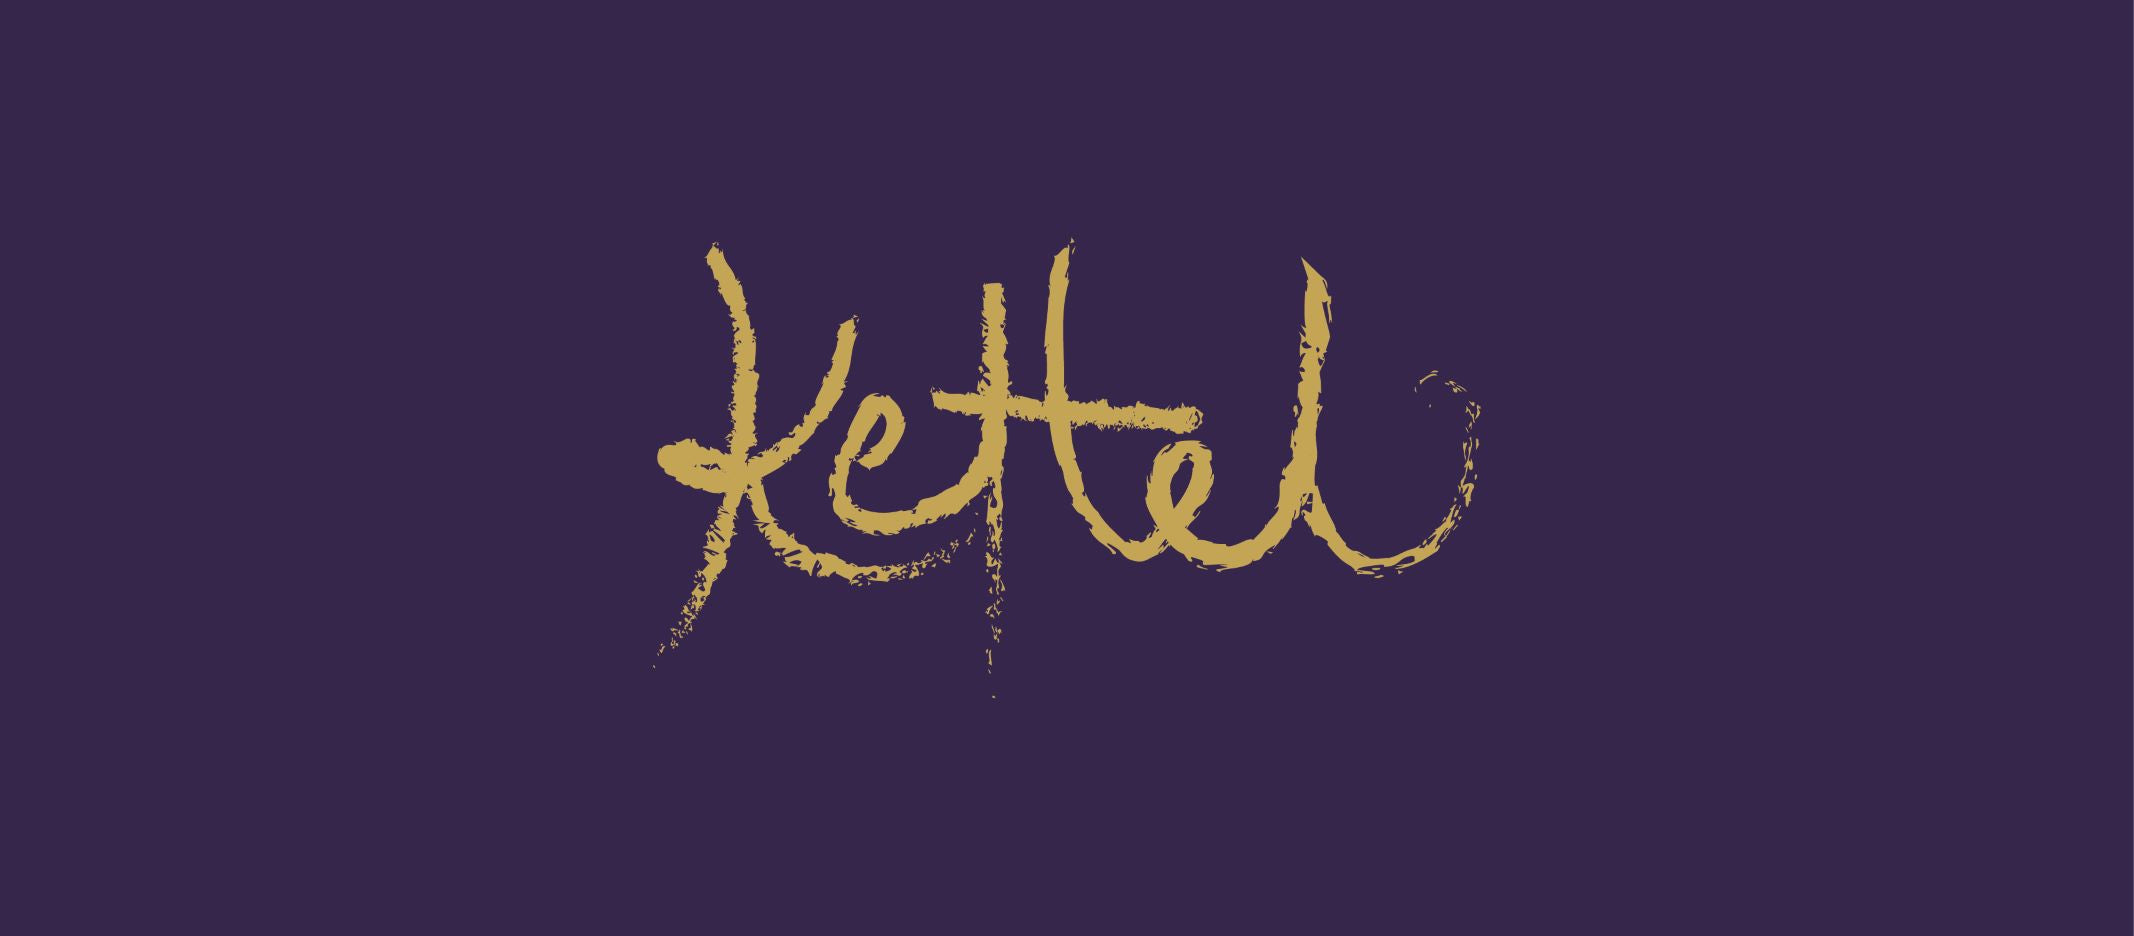 Kettel by ETTE TEA COMPANY